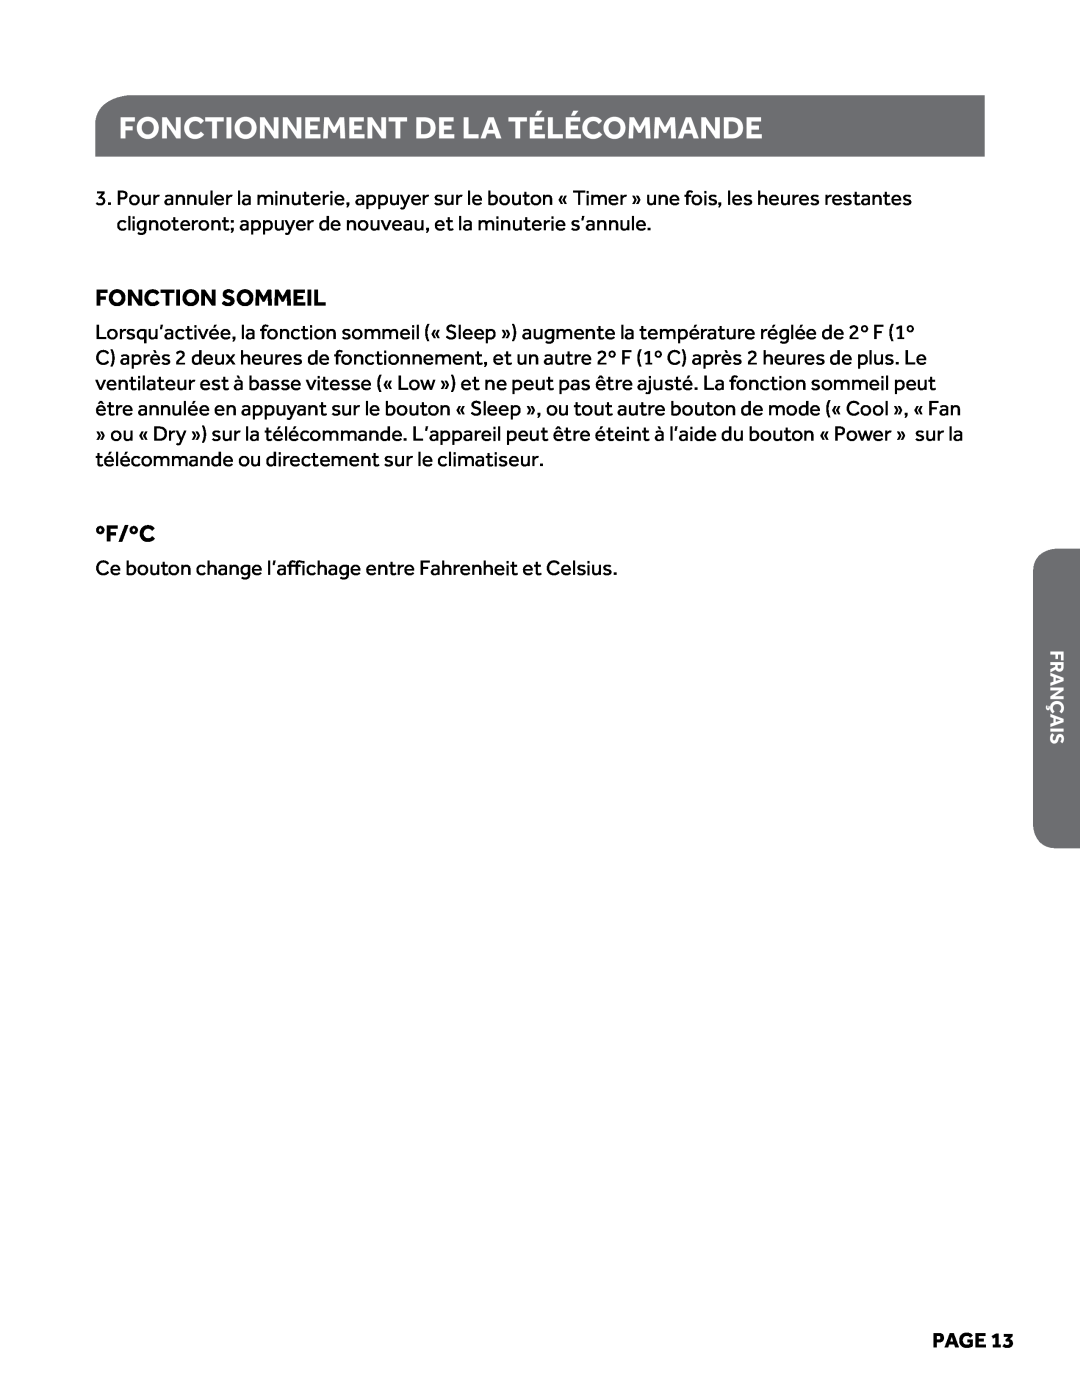 Haier HPY08XCM manual Fonctionnement de la télécommande, Fonction Sommeil, ºf/ºc, Page 